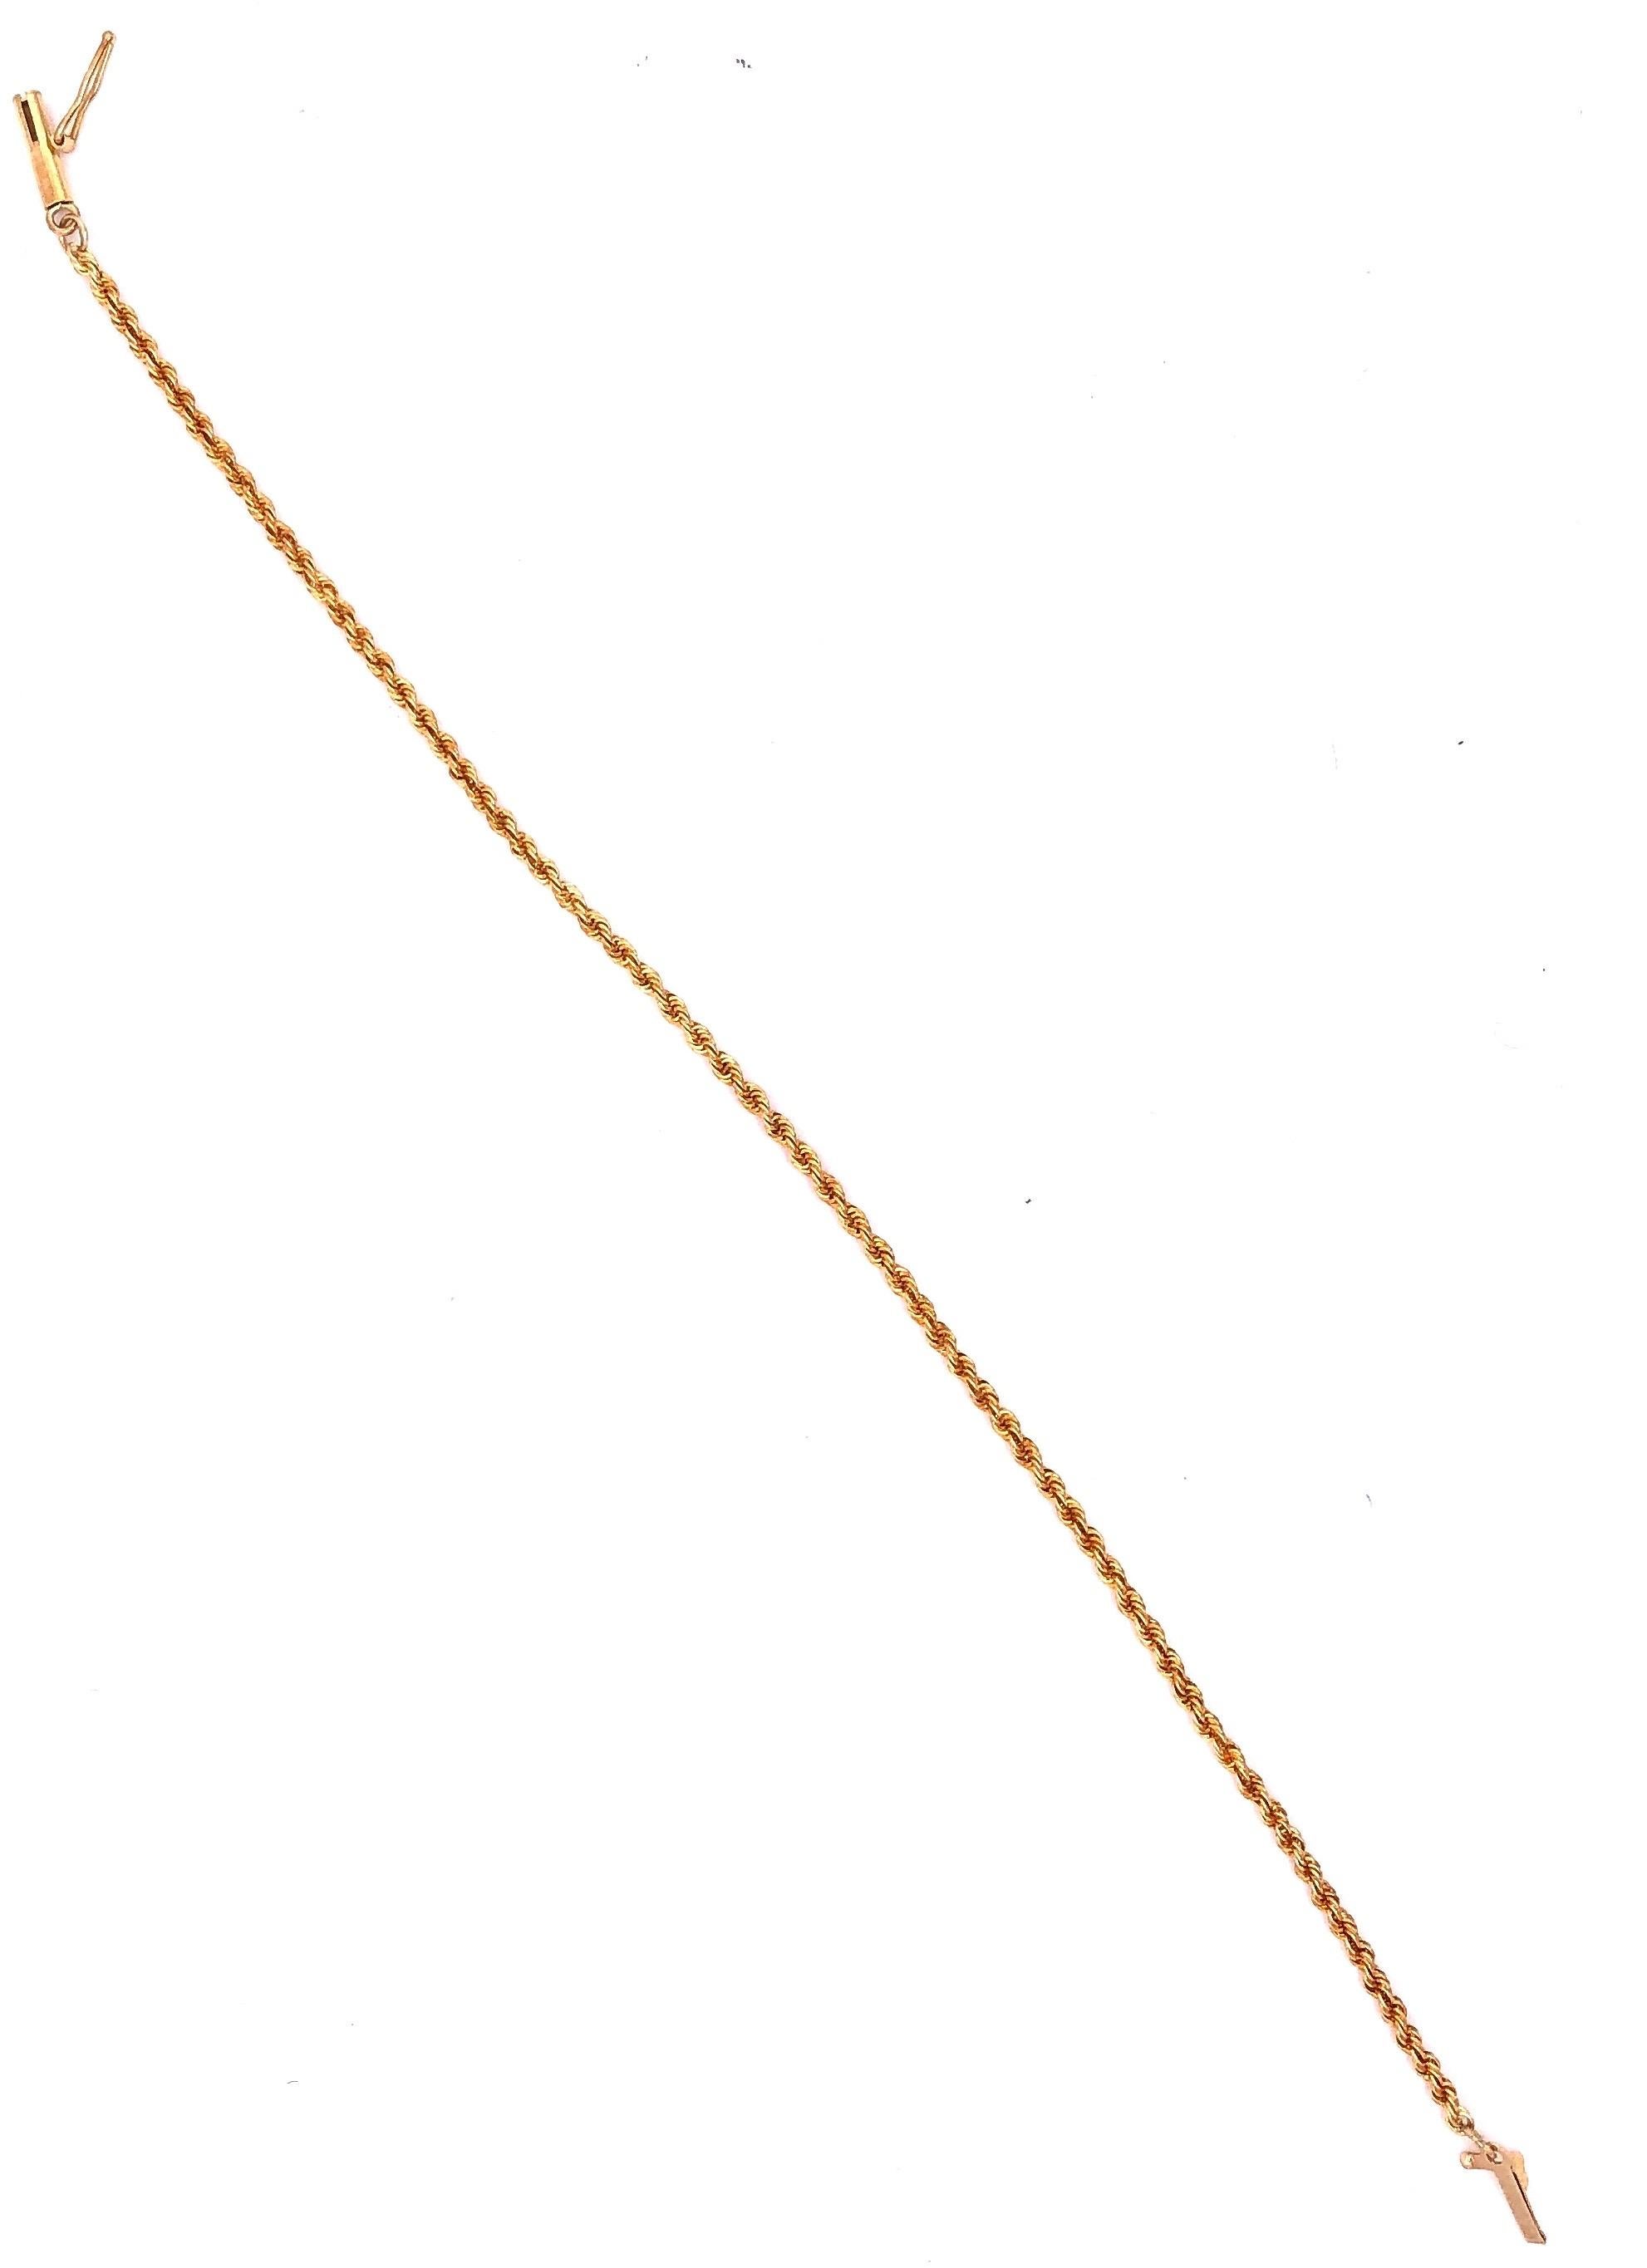 18 Karat Gelbgold Sieben-Zoll-Kreis-Kette-Armband
2.76 Gramm Gesamtgewicht.
